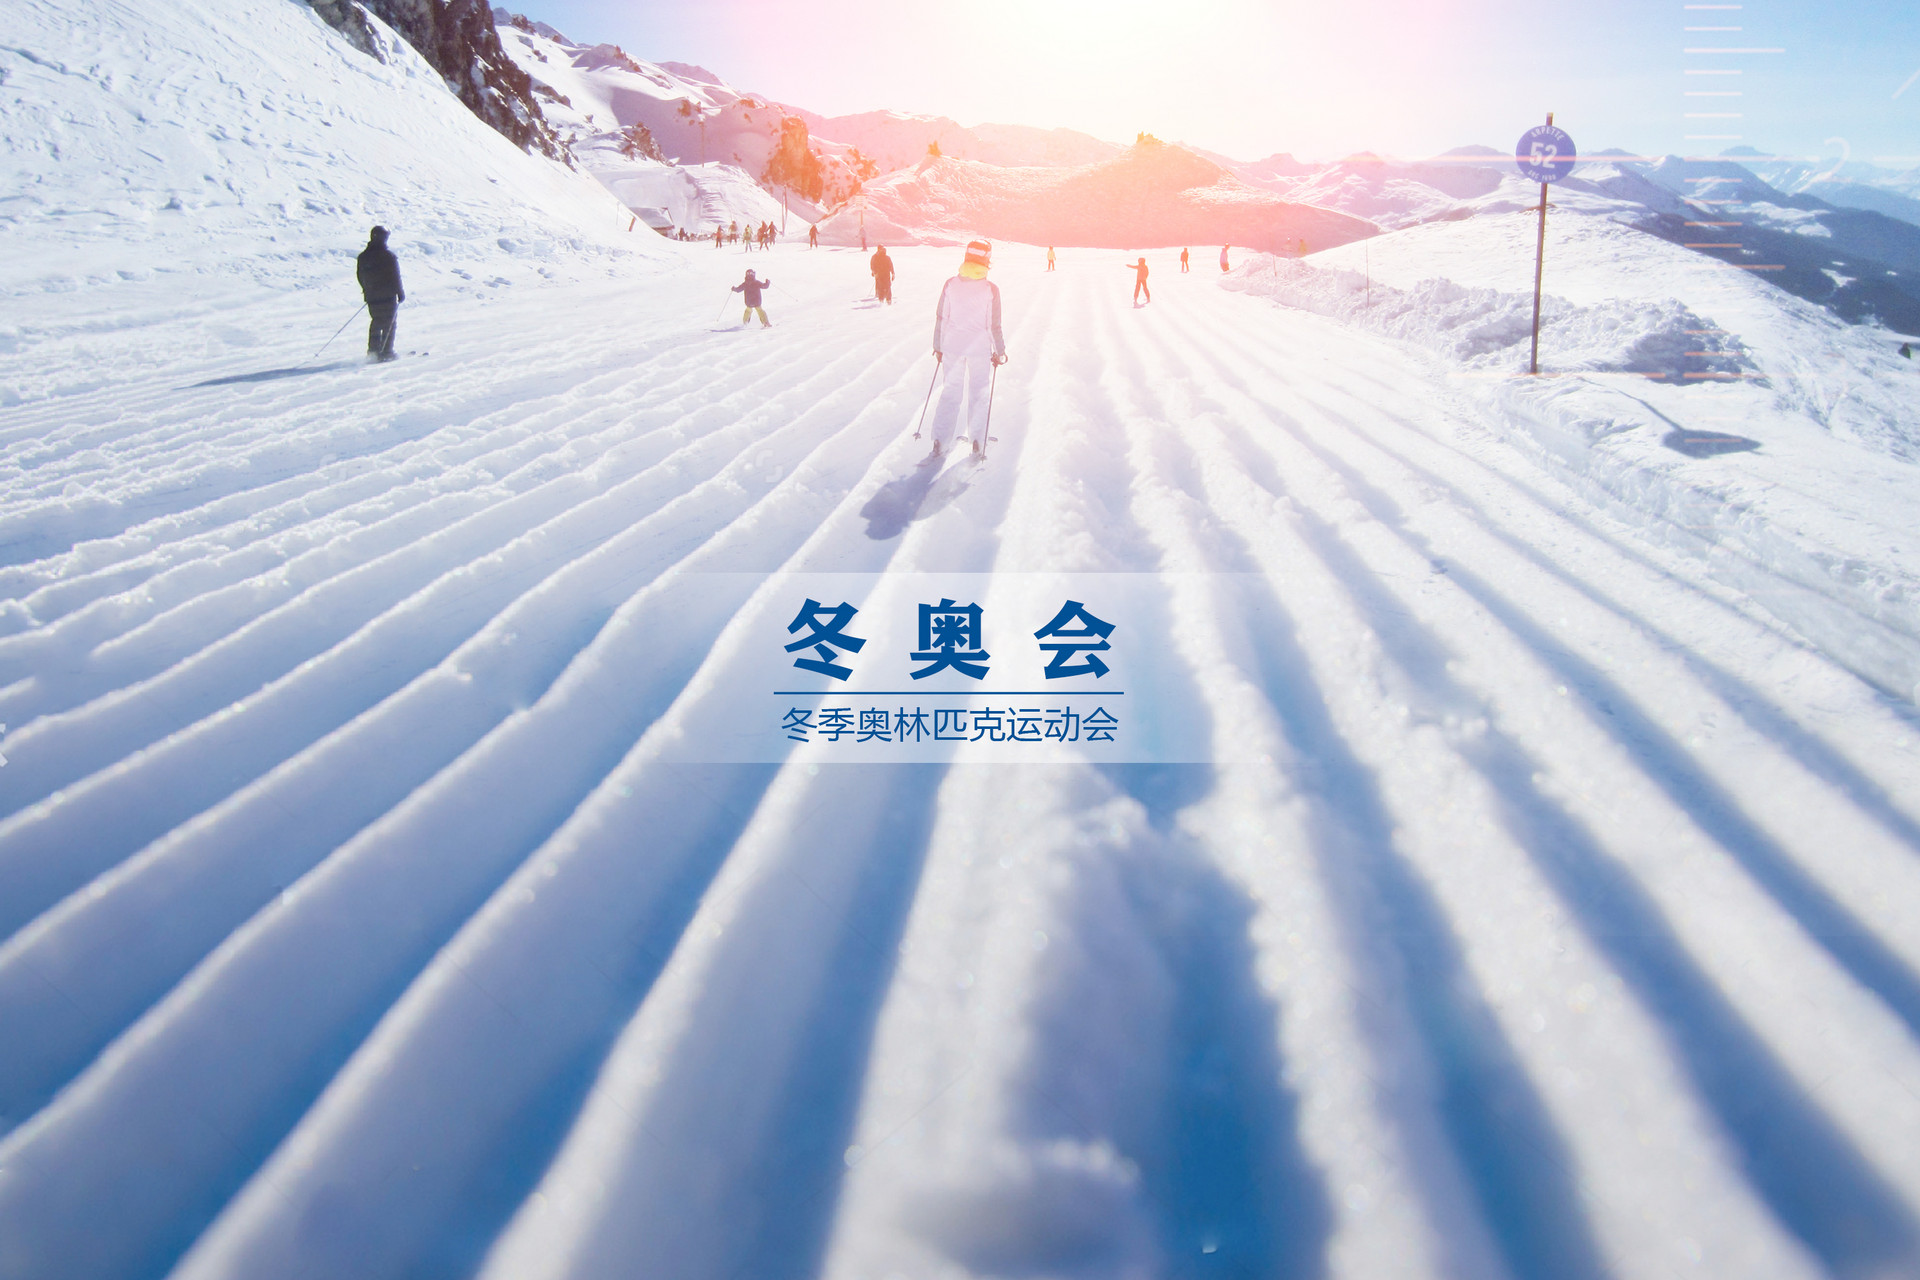 北京冬奥遗产战略计划发布 将建冬奥博物馆和奥林匹克学院